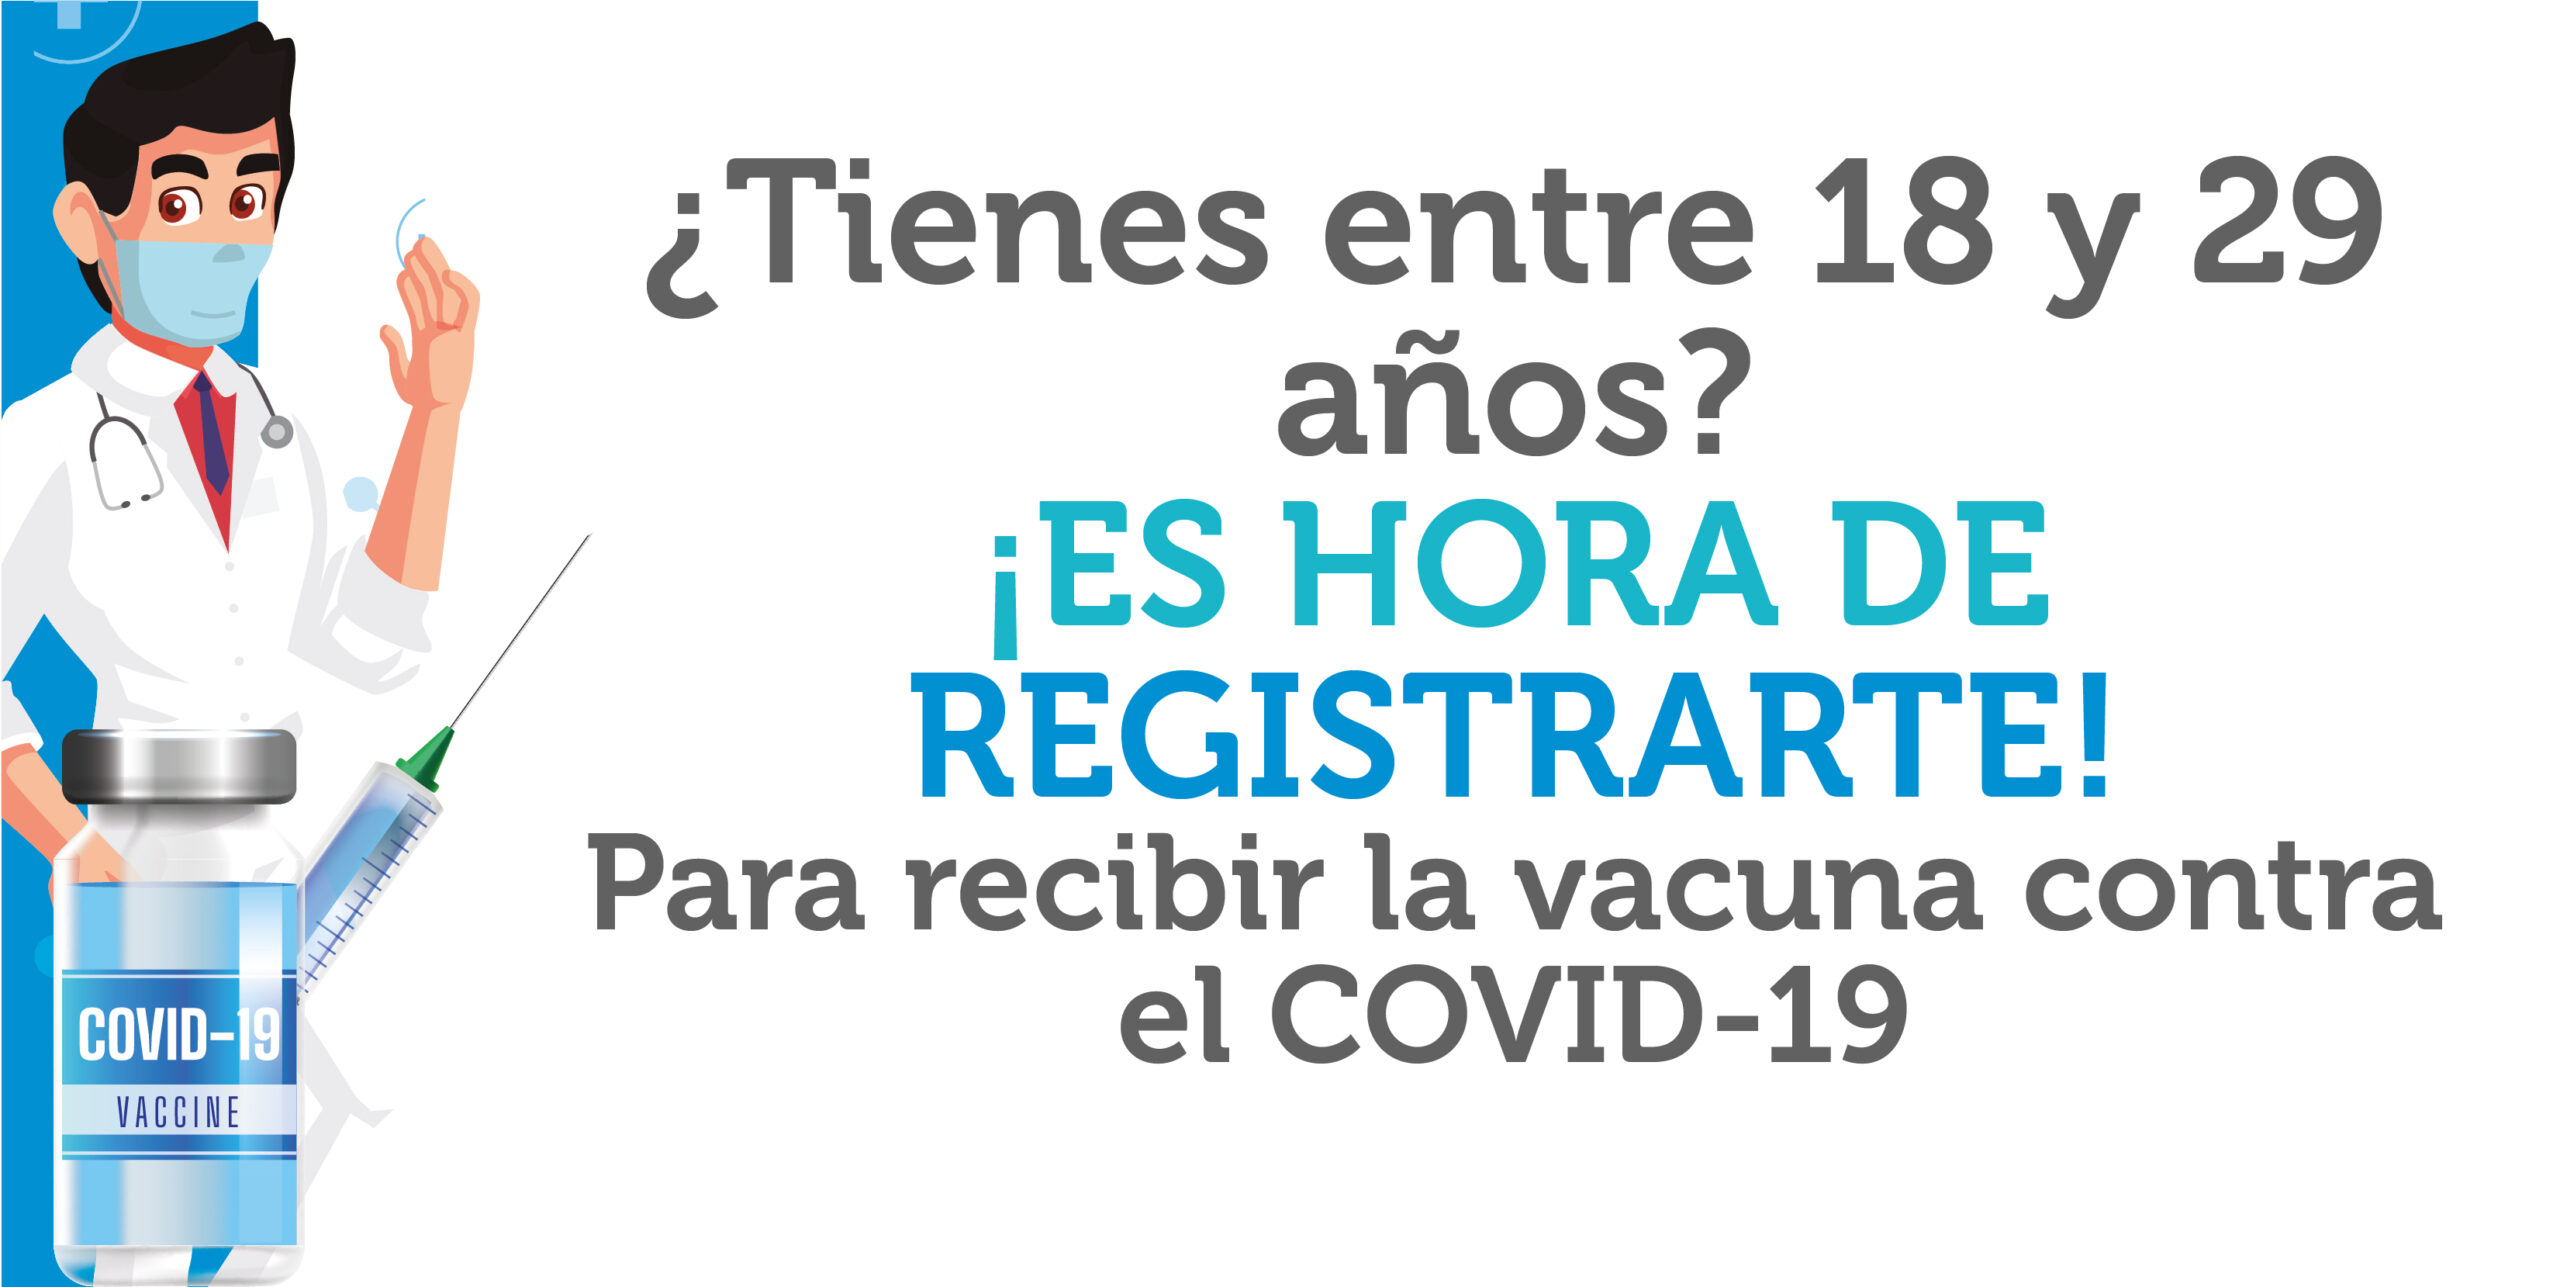 ¿Tienes entre 18 y 29 años? regístrate para recibir la vacuna contra el COVID-19. 💉